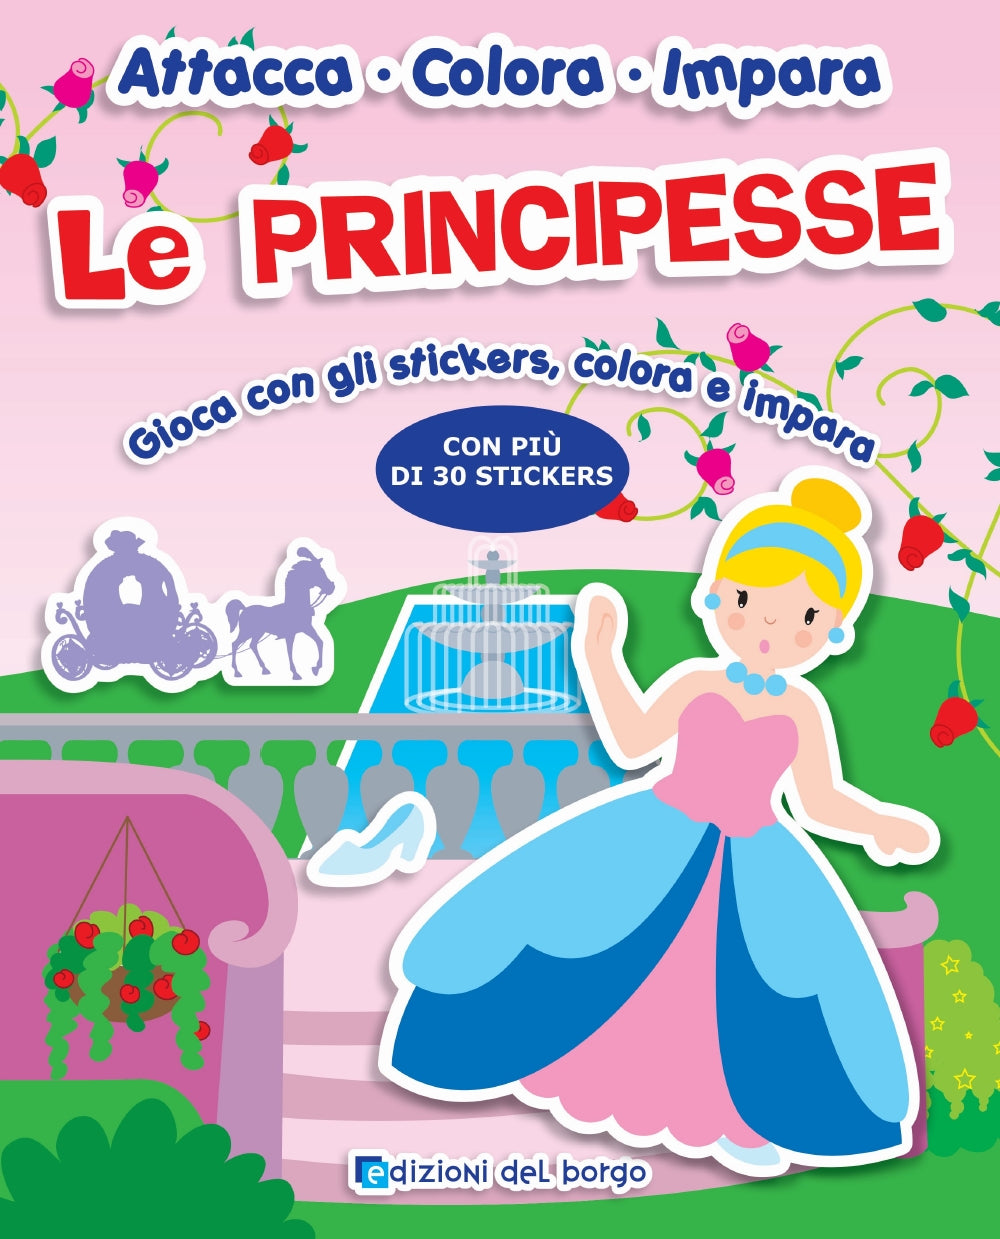 Le Principesse::Gioca con gli stickers, colora e impara - Con più di 30 stickers